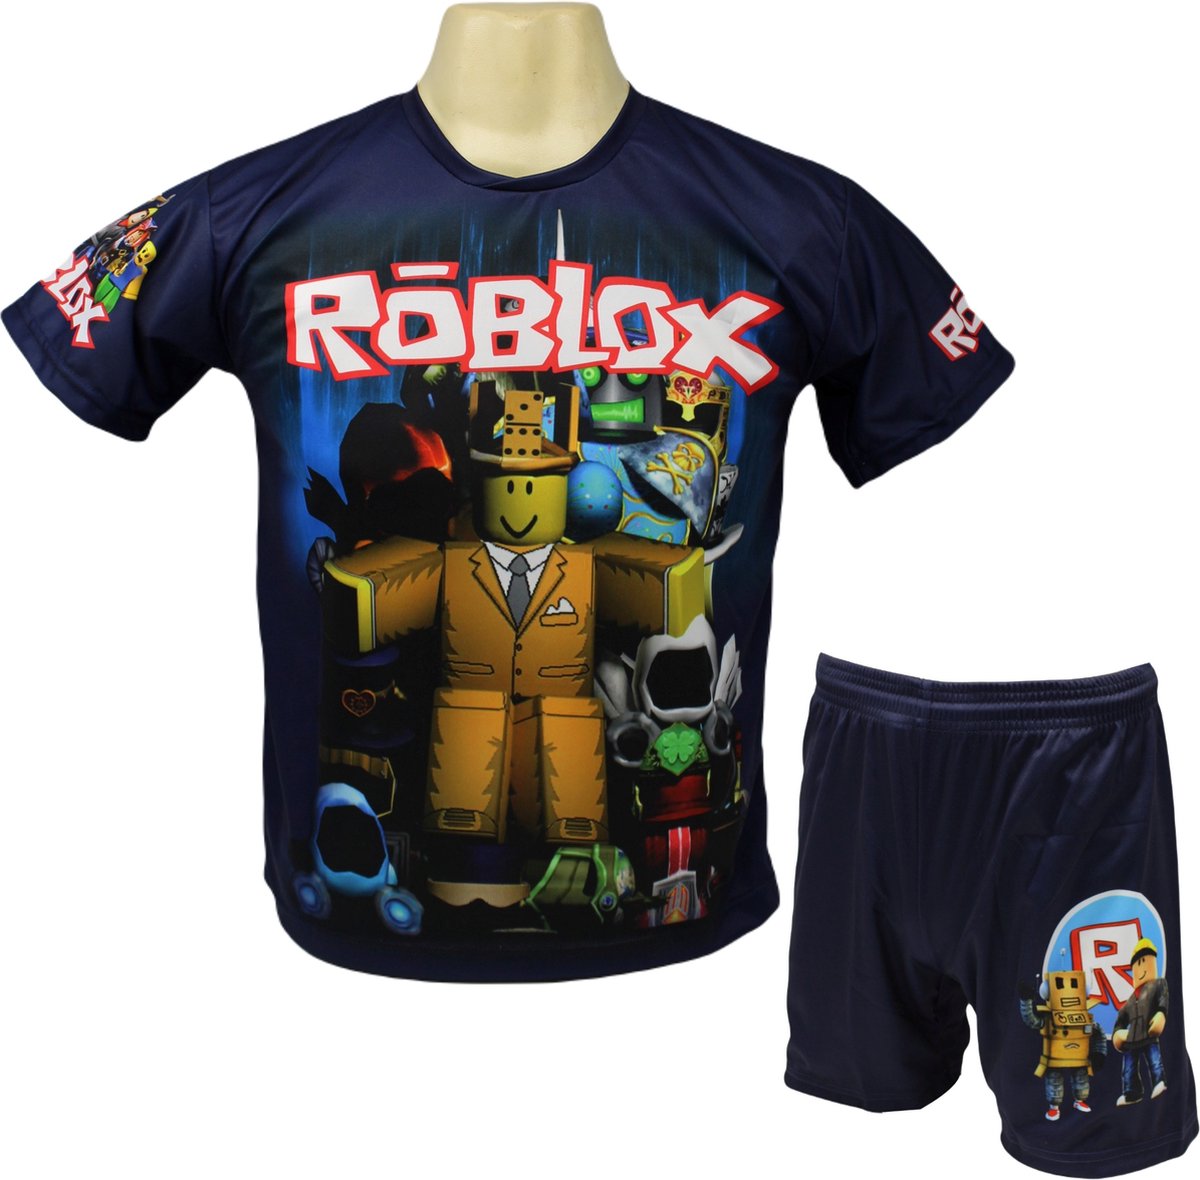 Roblox Shirt en Broekje - Roblox Kleding Tenue - Kinder tot Volwassen maten - Maat S (164)